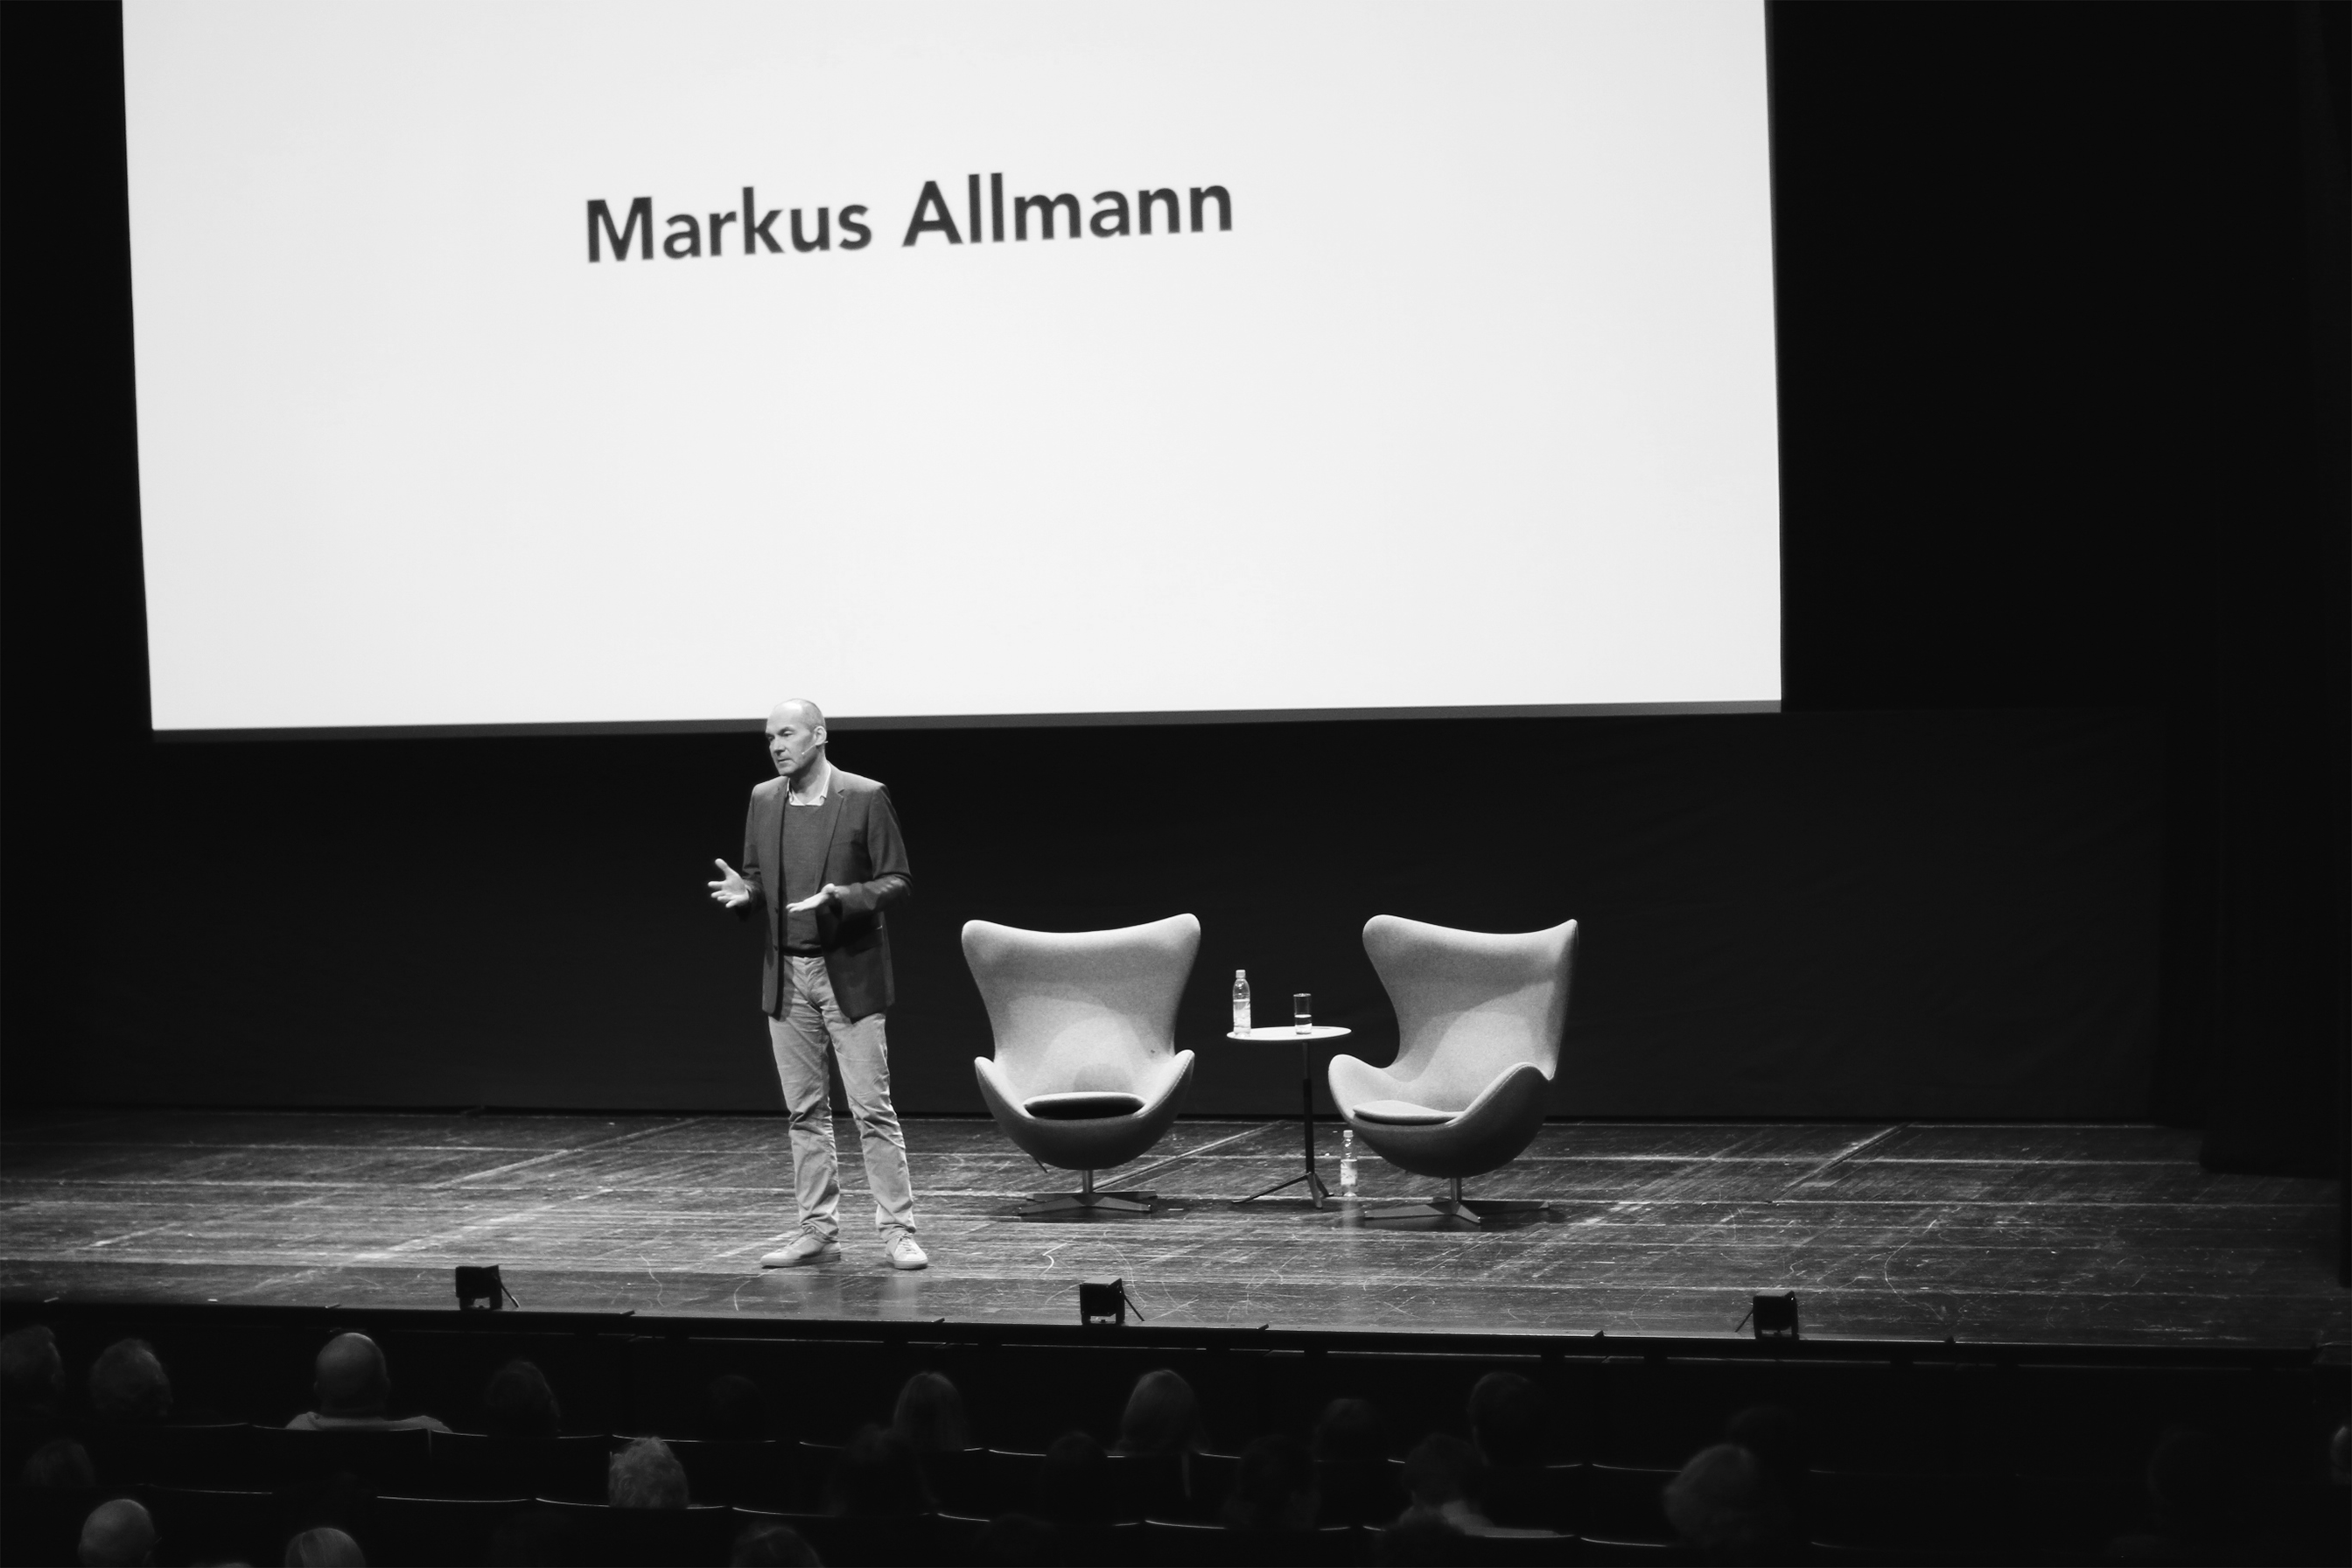 Markus Allmann